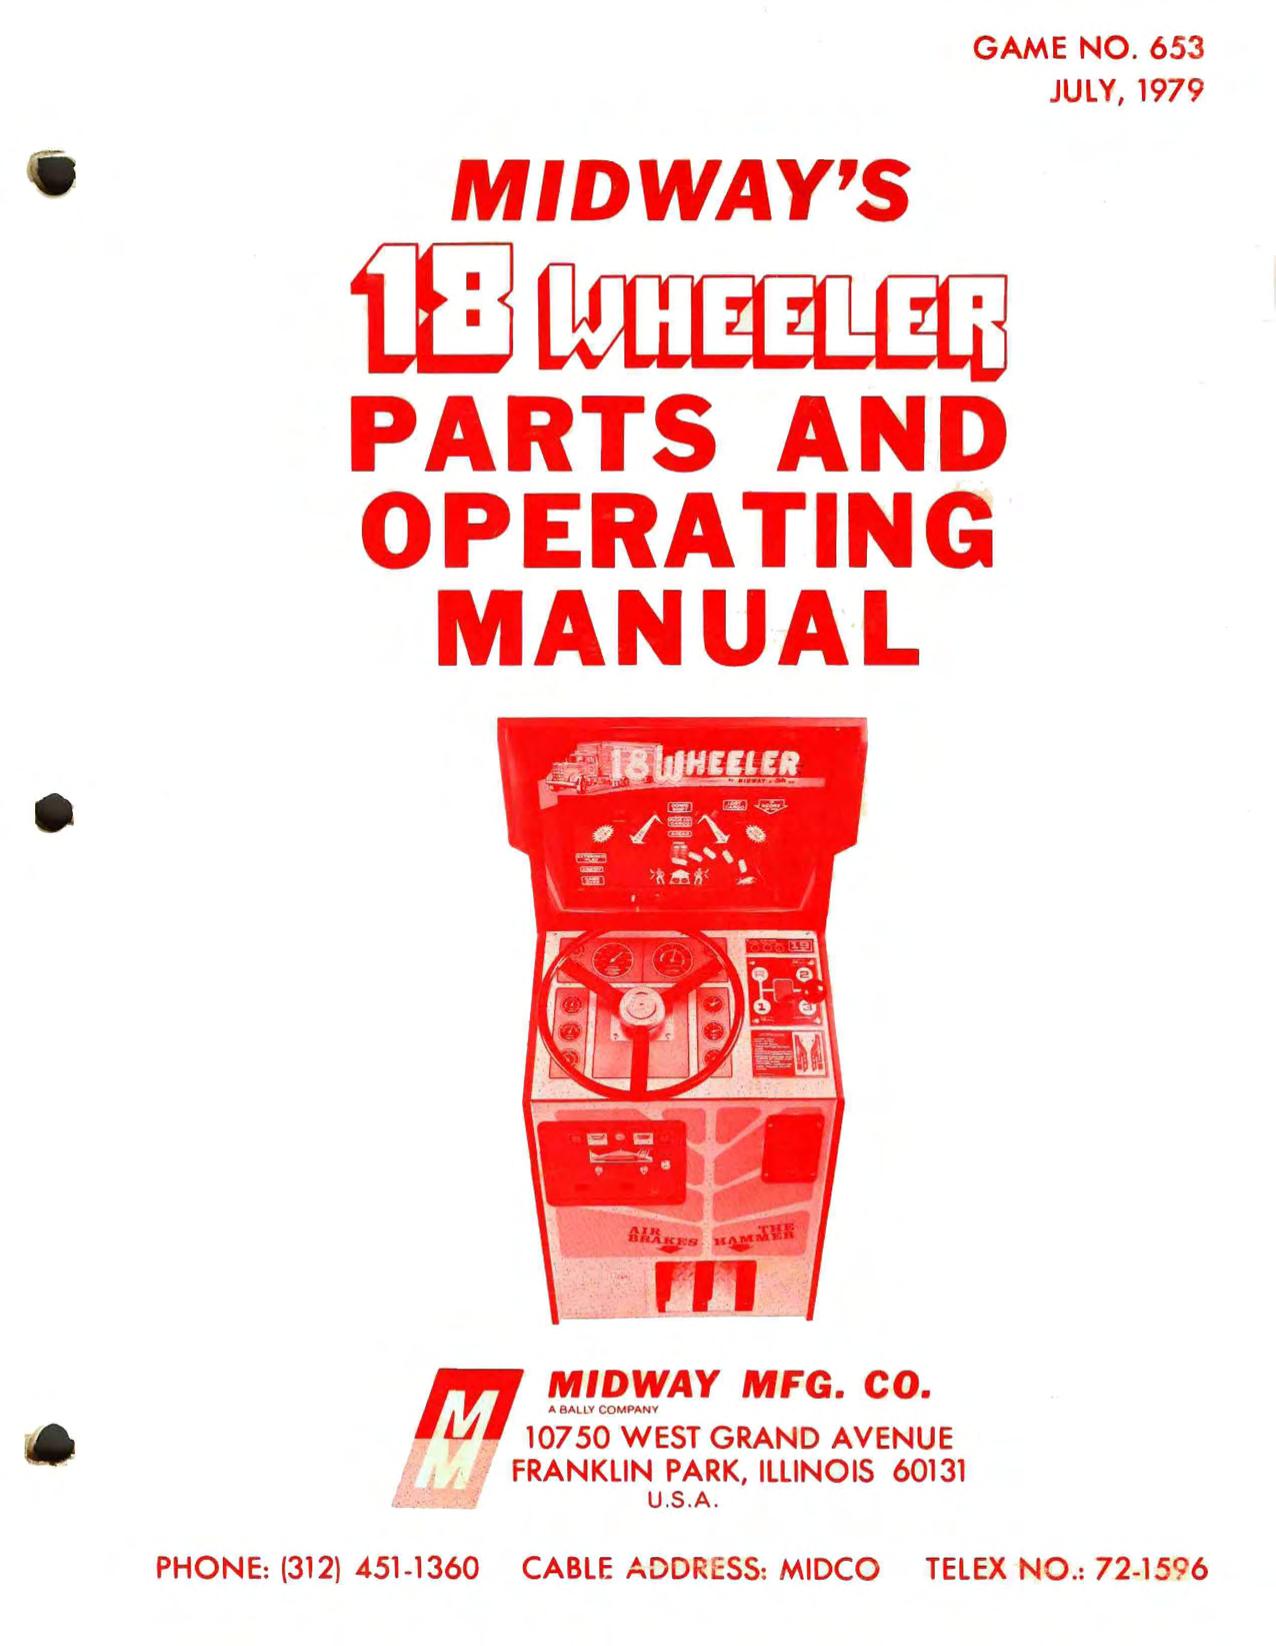 18 Wheeler Parts and Operating Manual